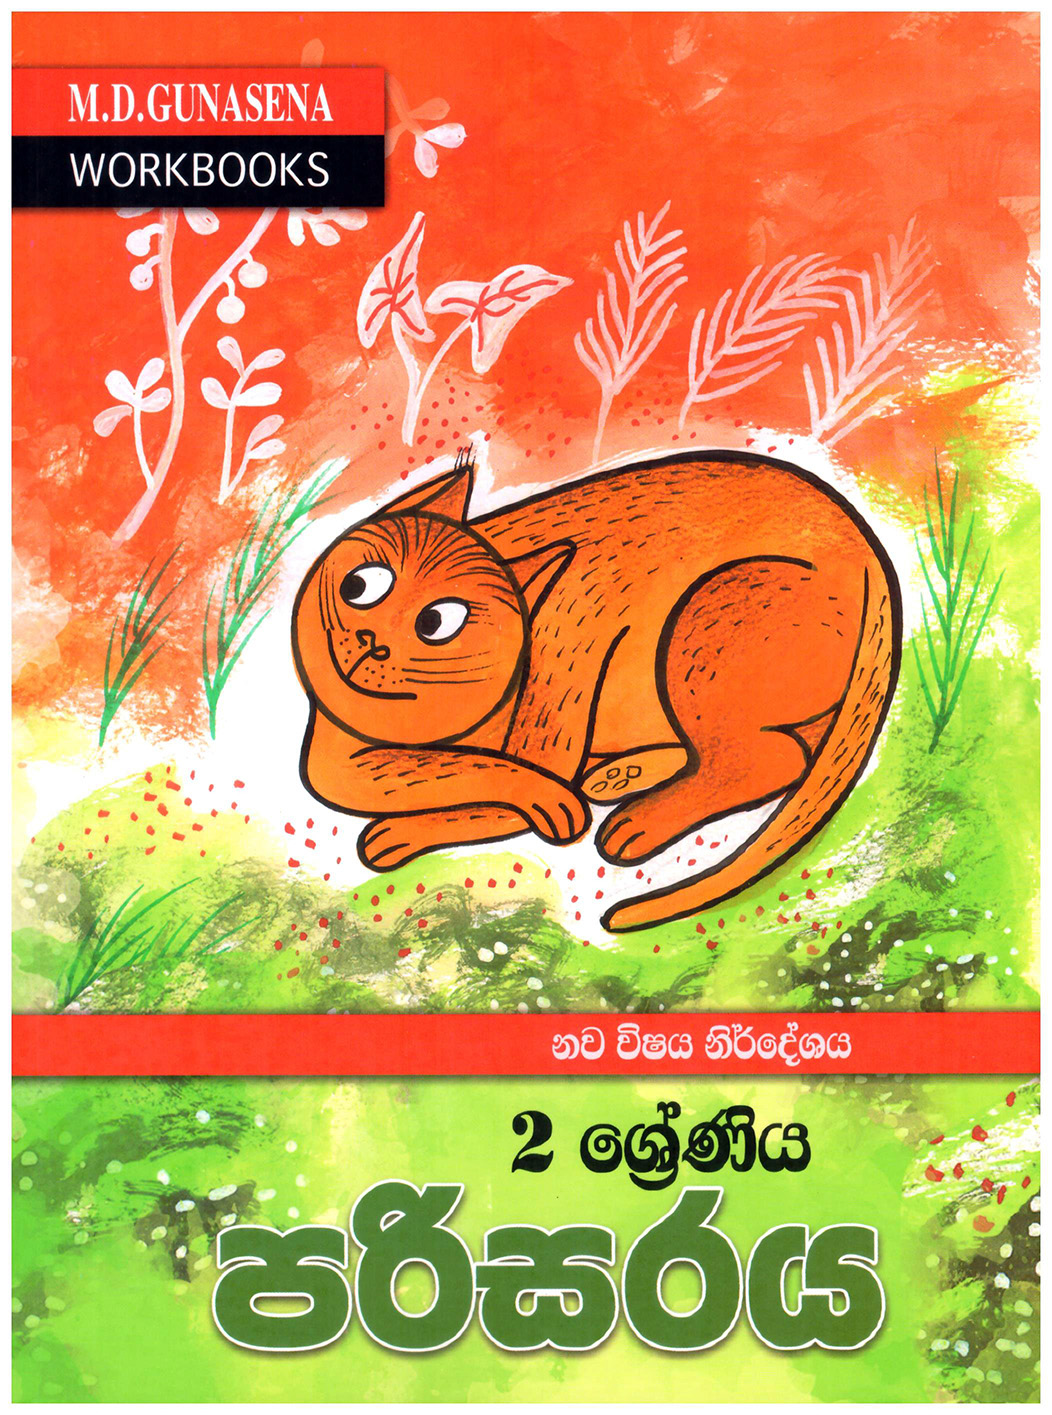 M.D. Gunasena Workbooks : Parisaraya 02 Shreniya